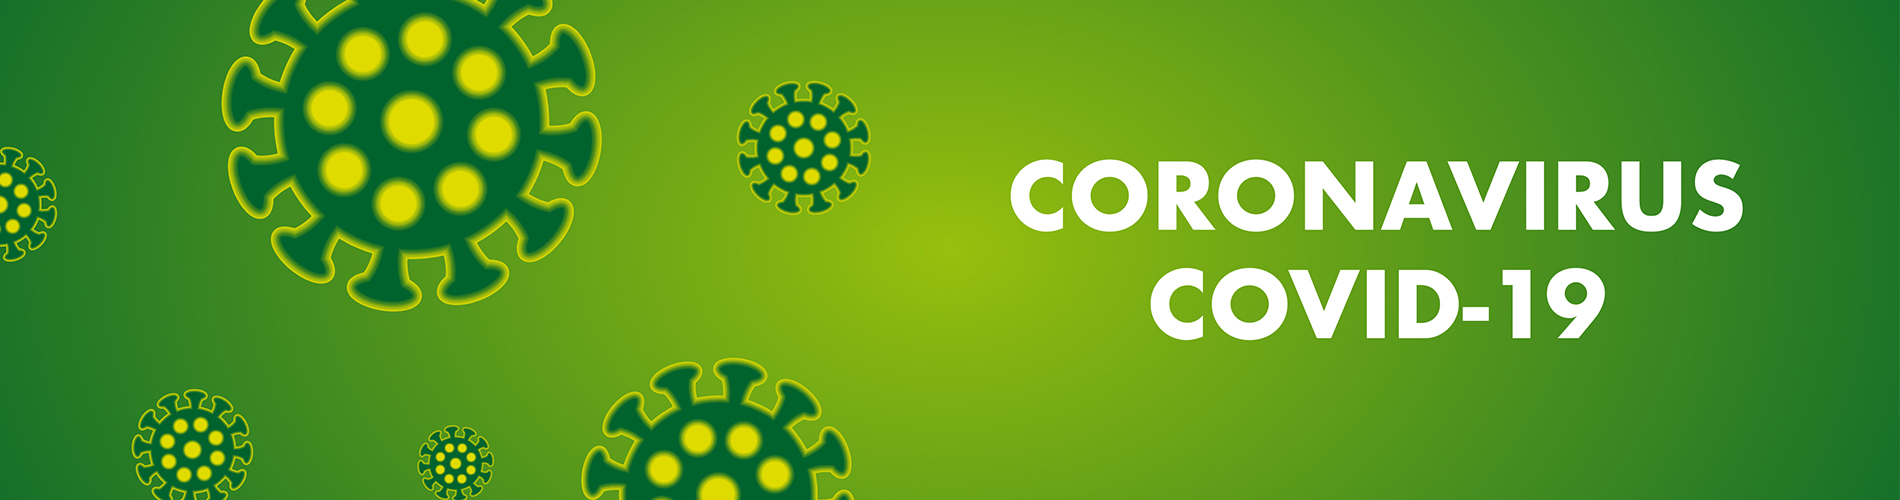 Coronavirus-1900-x-500